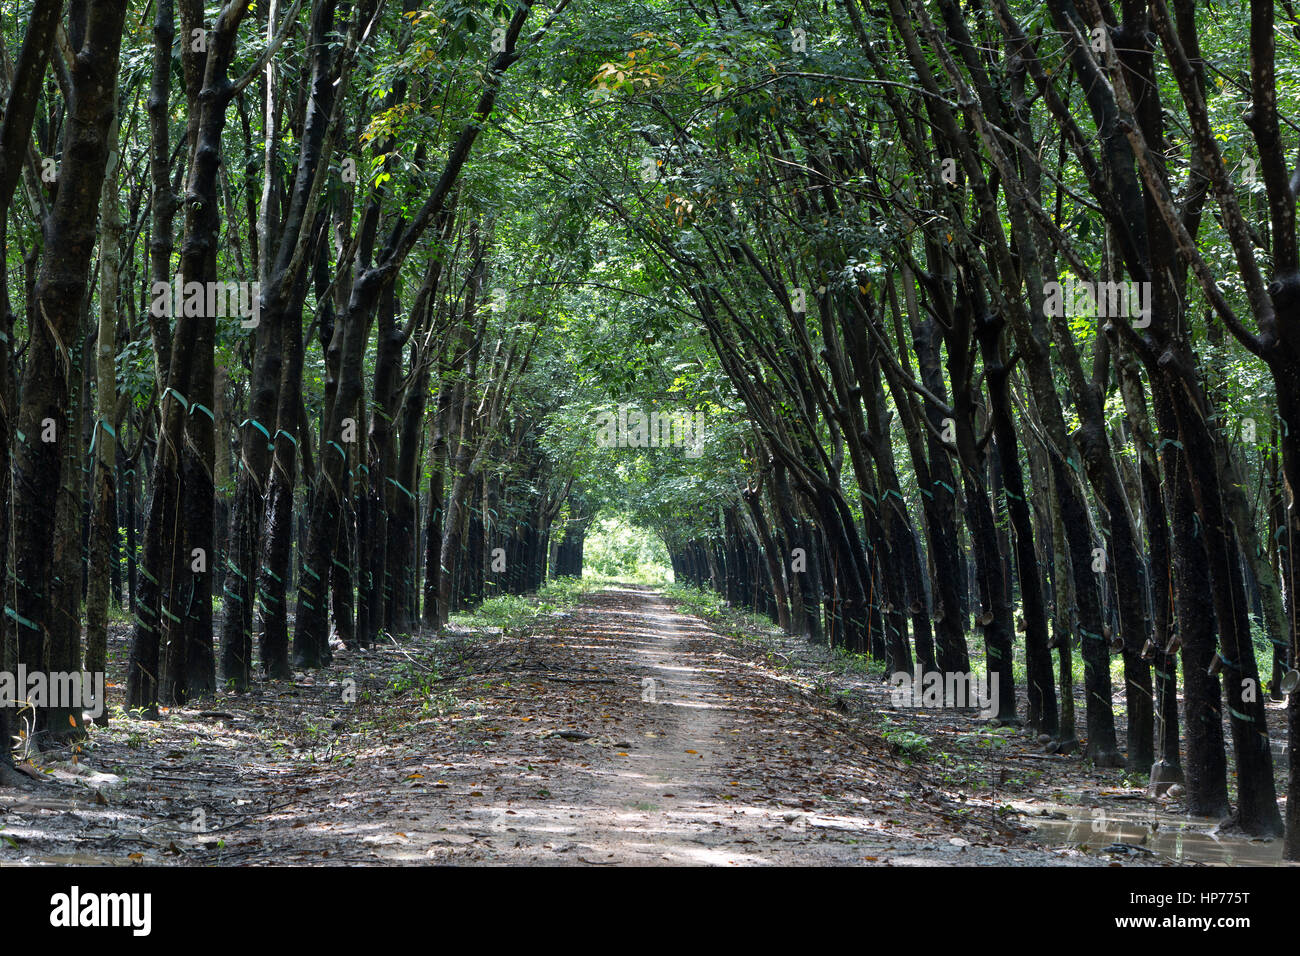 Para la piantagione di alberi 'Hevea Brasiliensis' , dando un effetto della cattedrale, convergenti treeline & carreggiata, ombra con luce solare filtrata. Foto Stock